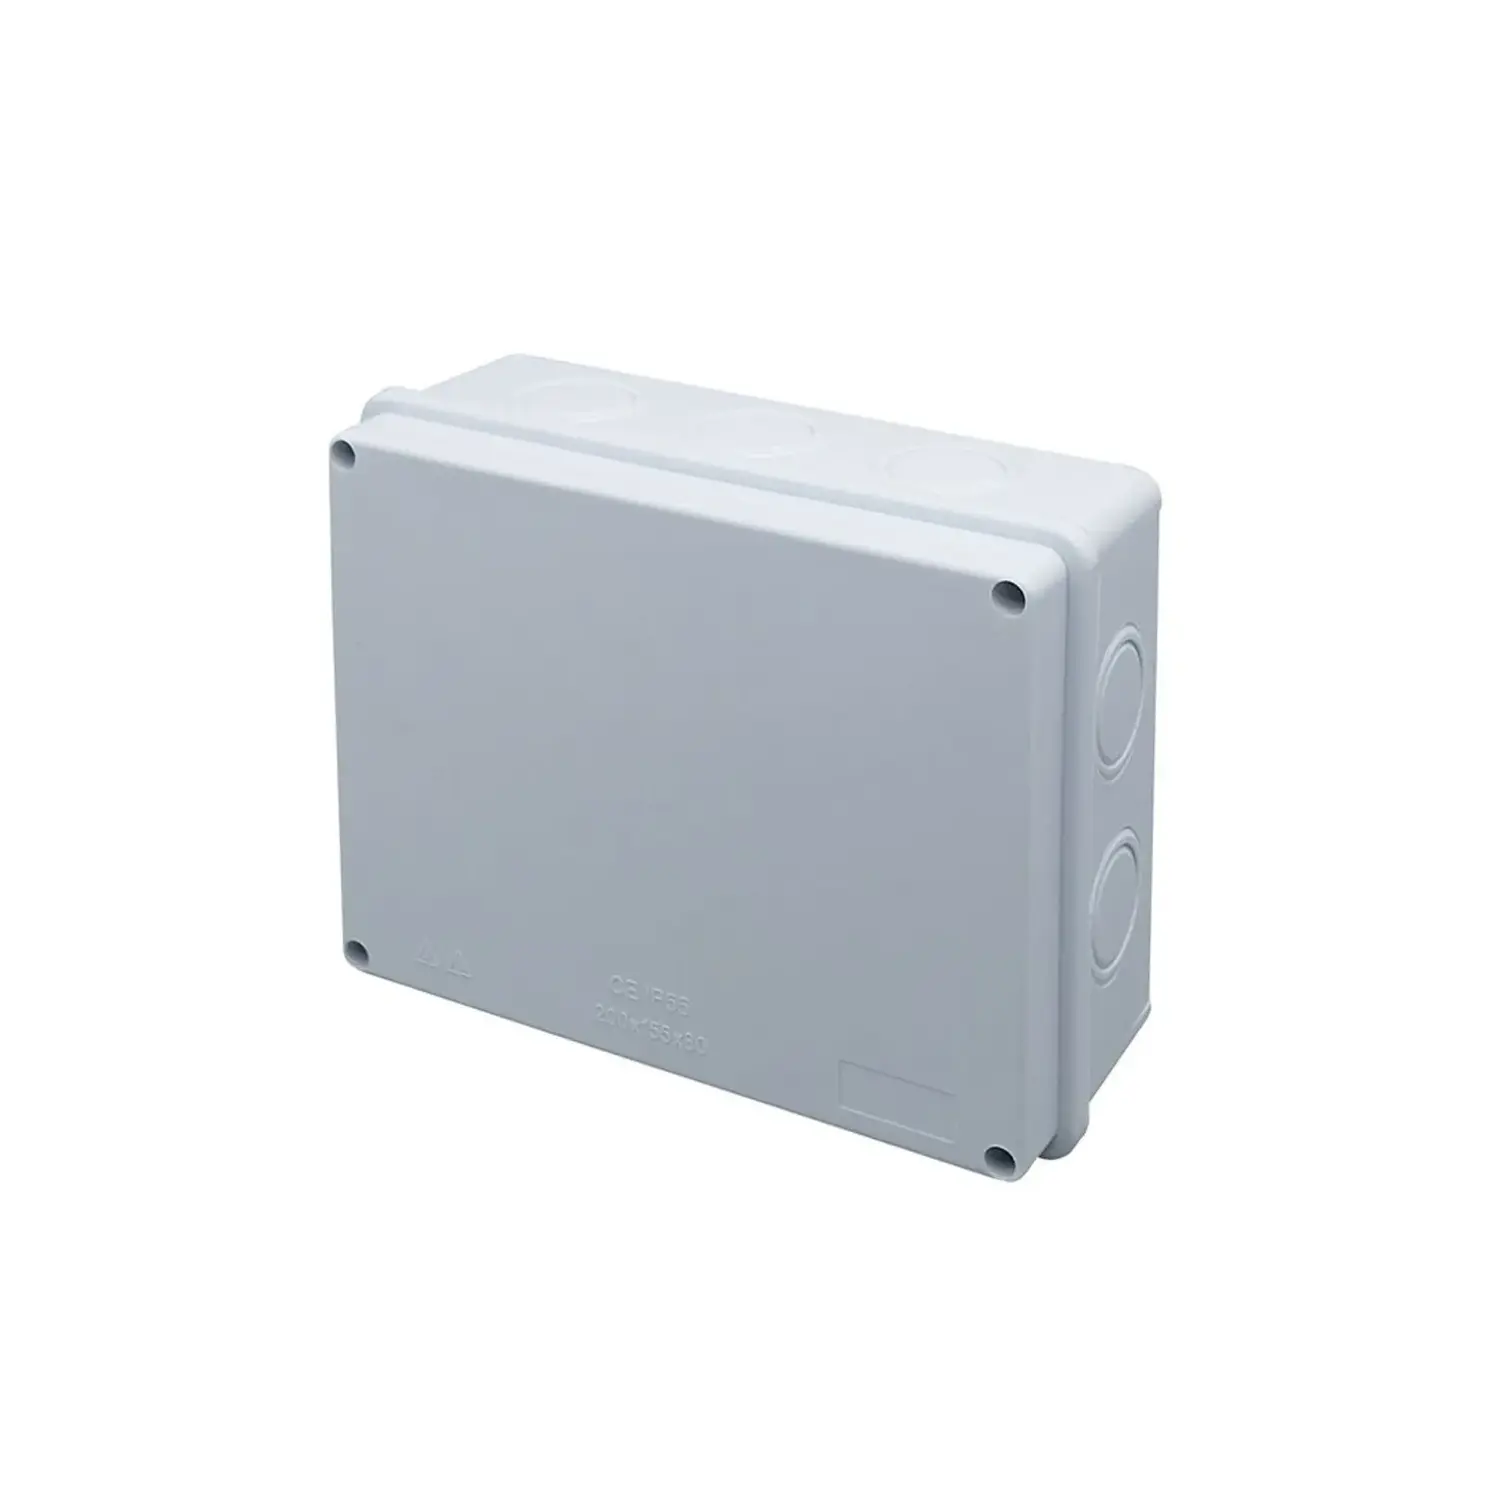 immagine del prodotto cassetta scatola derivazione elettrica esterno stagna liscia 150x110x70mm ip65